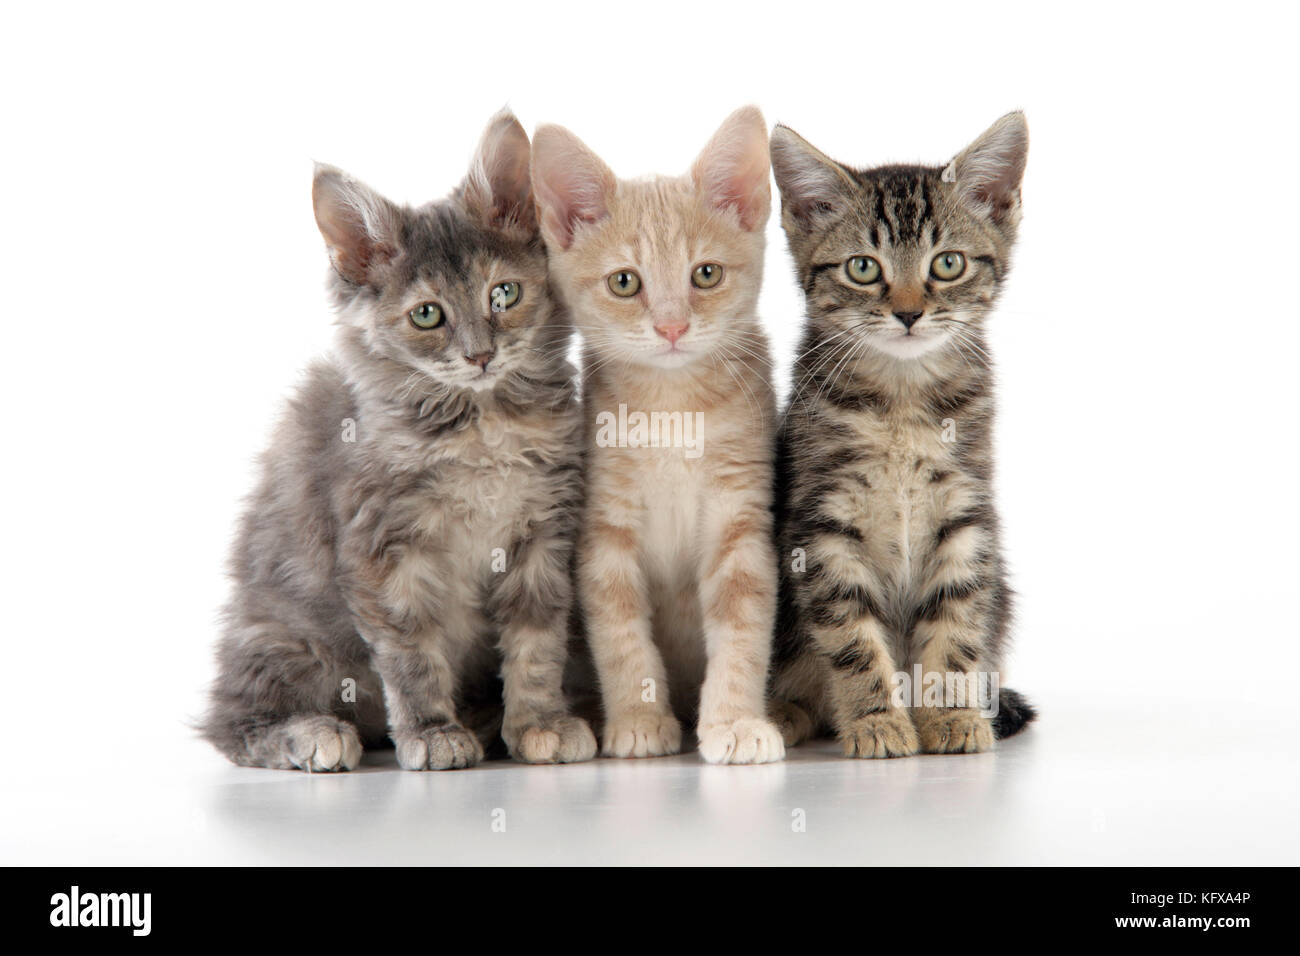 CAT. three kittens Stock Photo